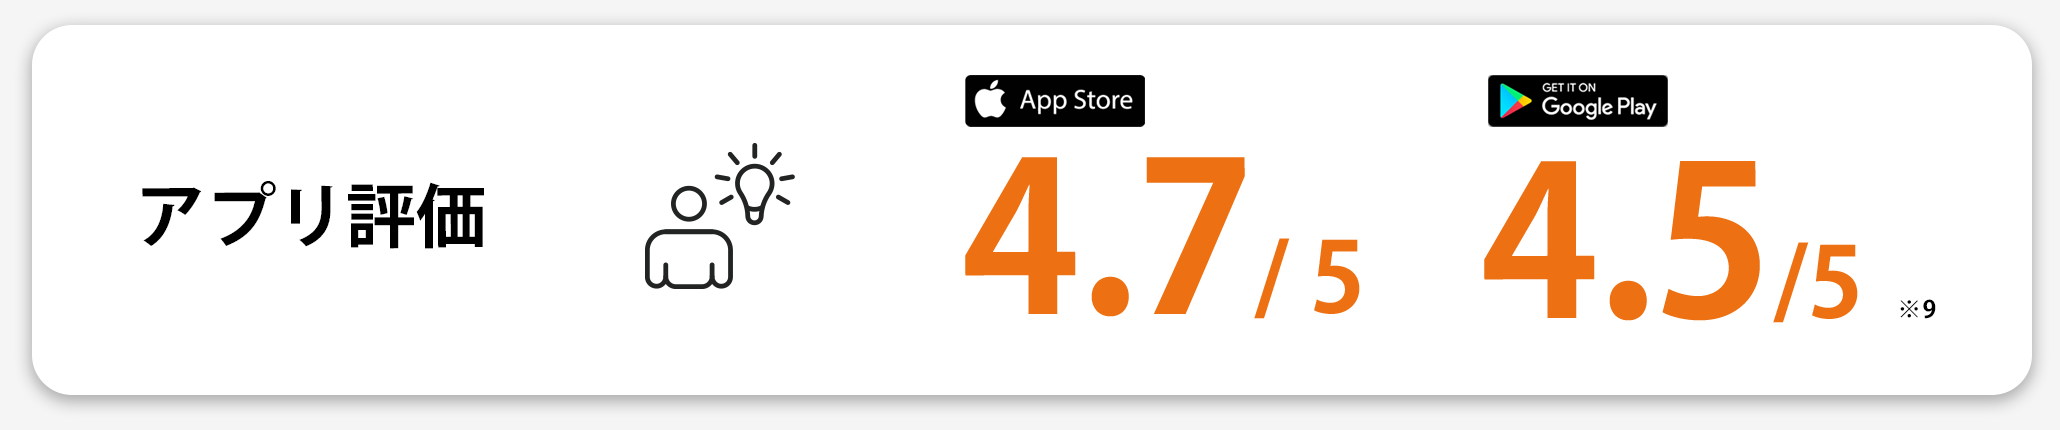 アプリ評価 AppStore:4.7/5 GooglePlay:4.5/5(※9)